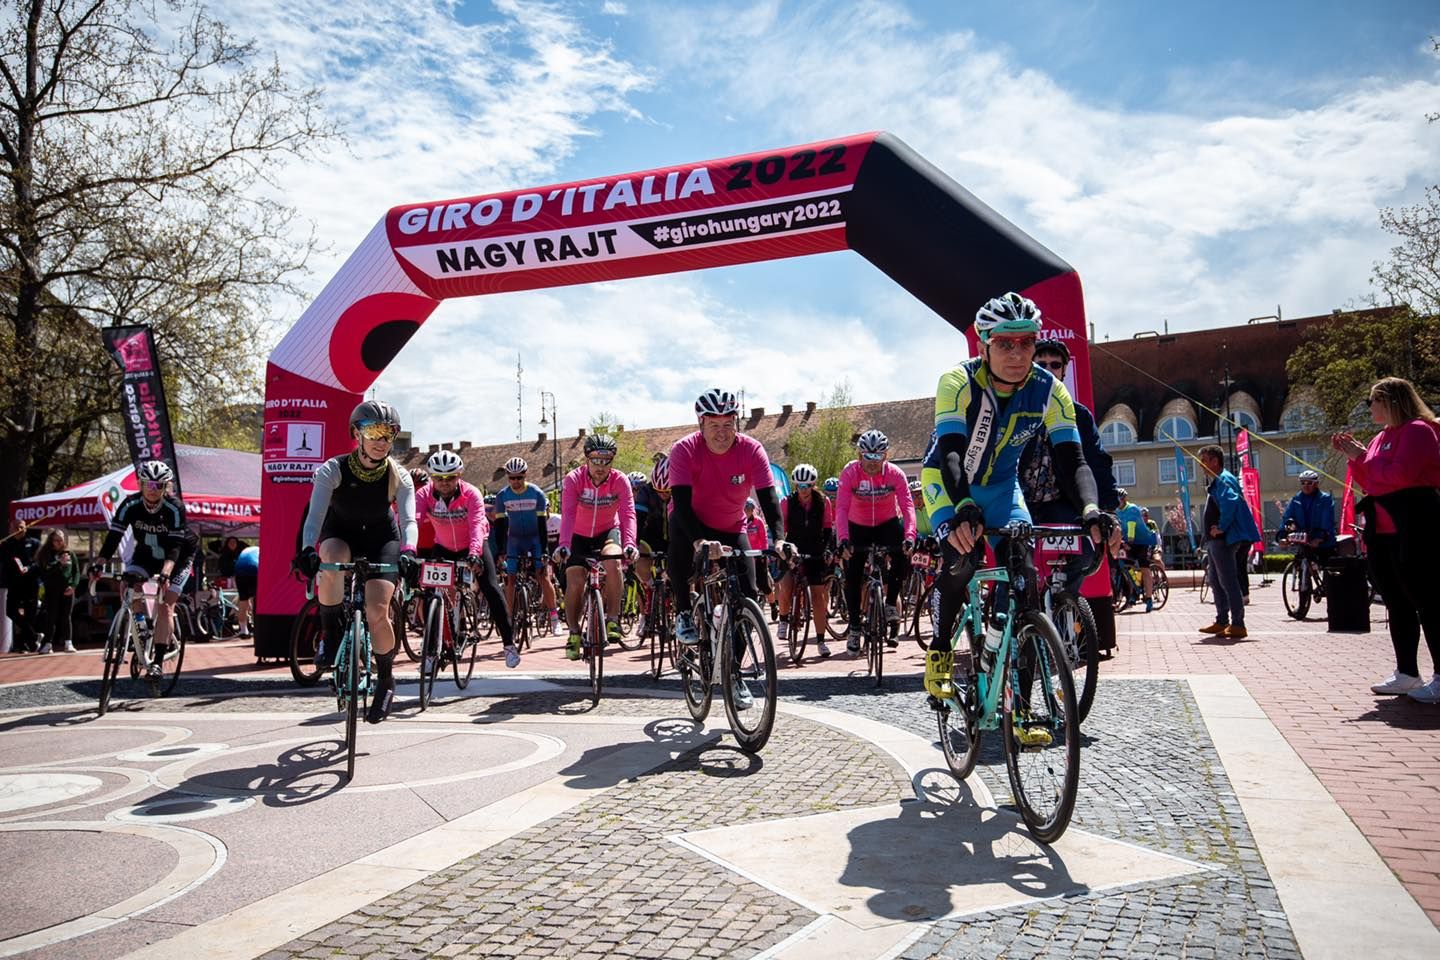 Látványos részhajrá várja a Giro d'Italia mezőnyét pénteken Székesfehérváron